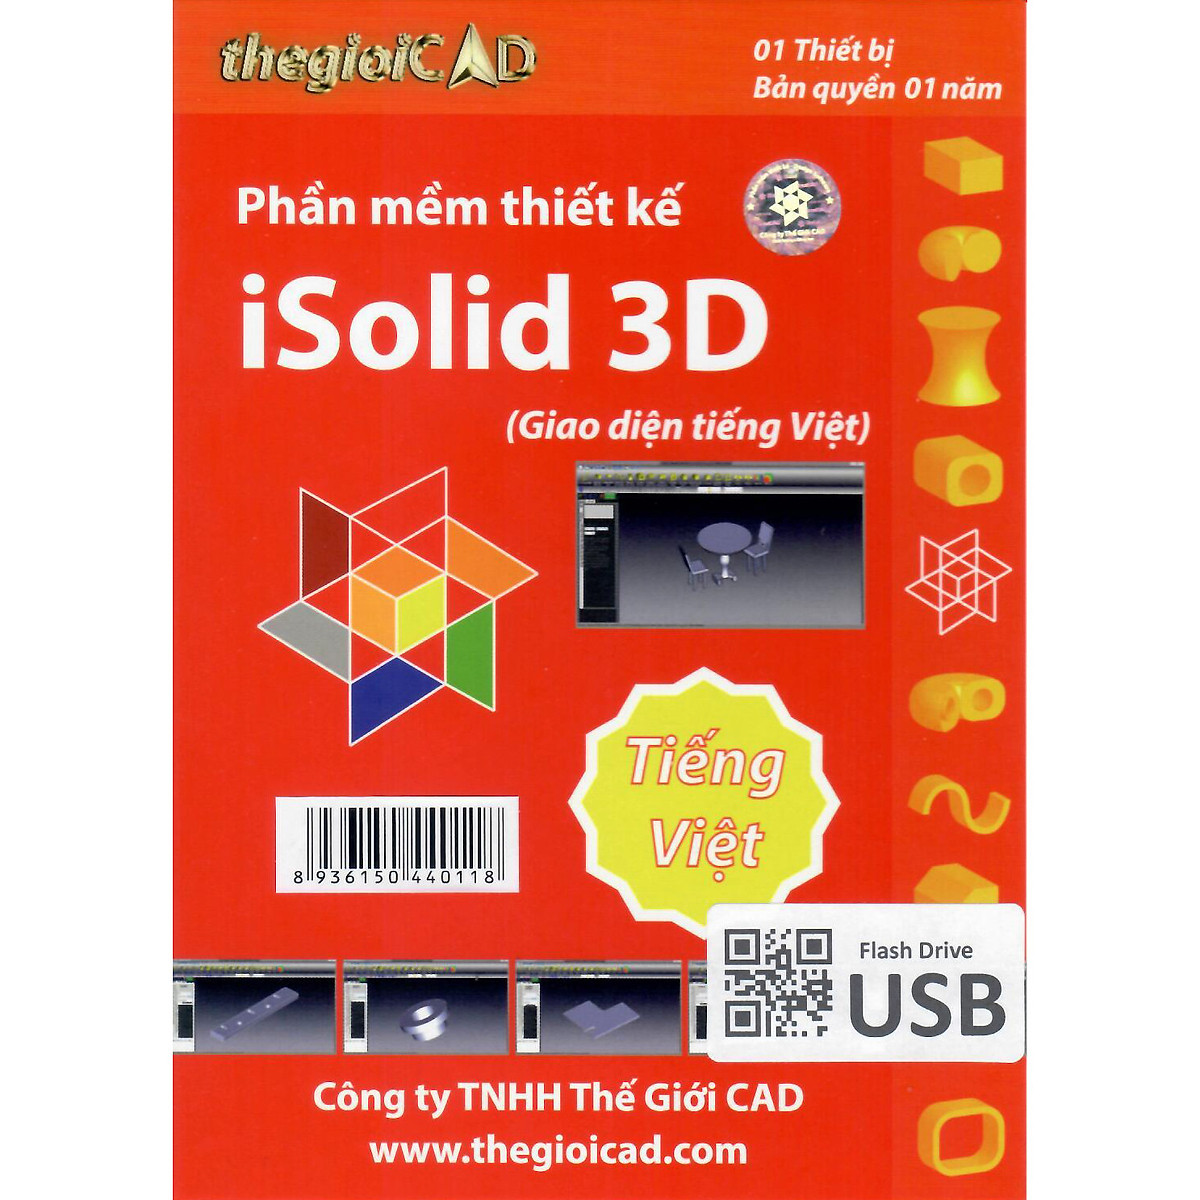 Phần mềm thiết kế iSolid 3D phiên bản tiêu chuẩn - Giao diện tiếng Việt (USB/04/2021) - Hàng Chính Hãng - Bản quyền 01 Năm